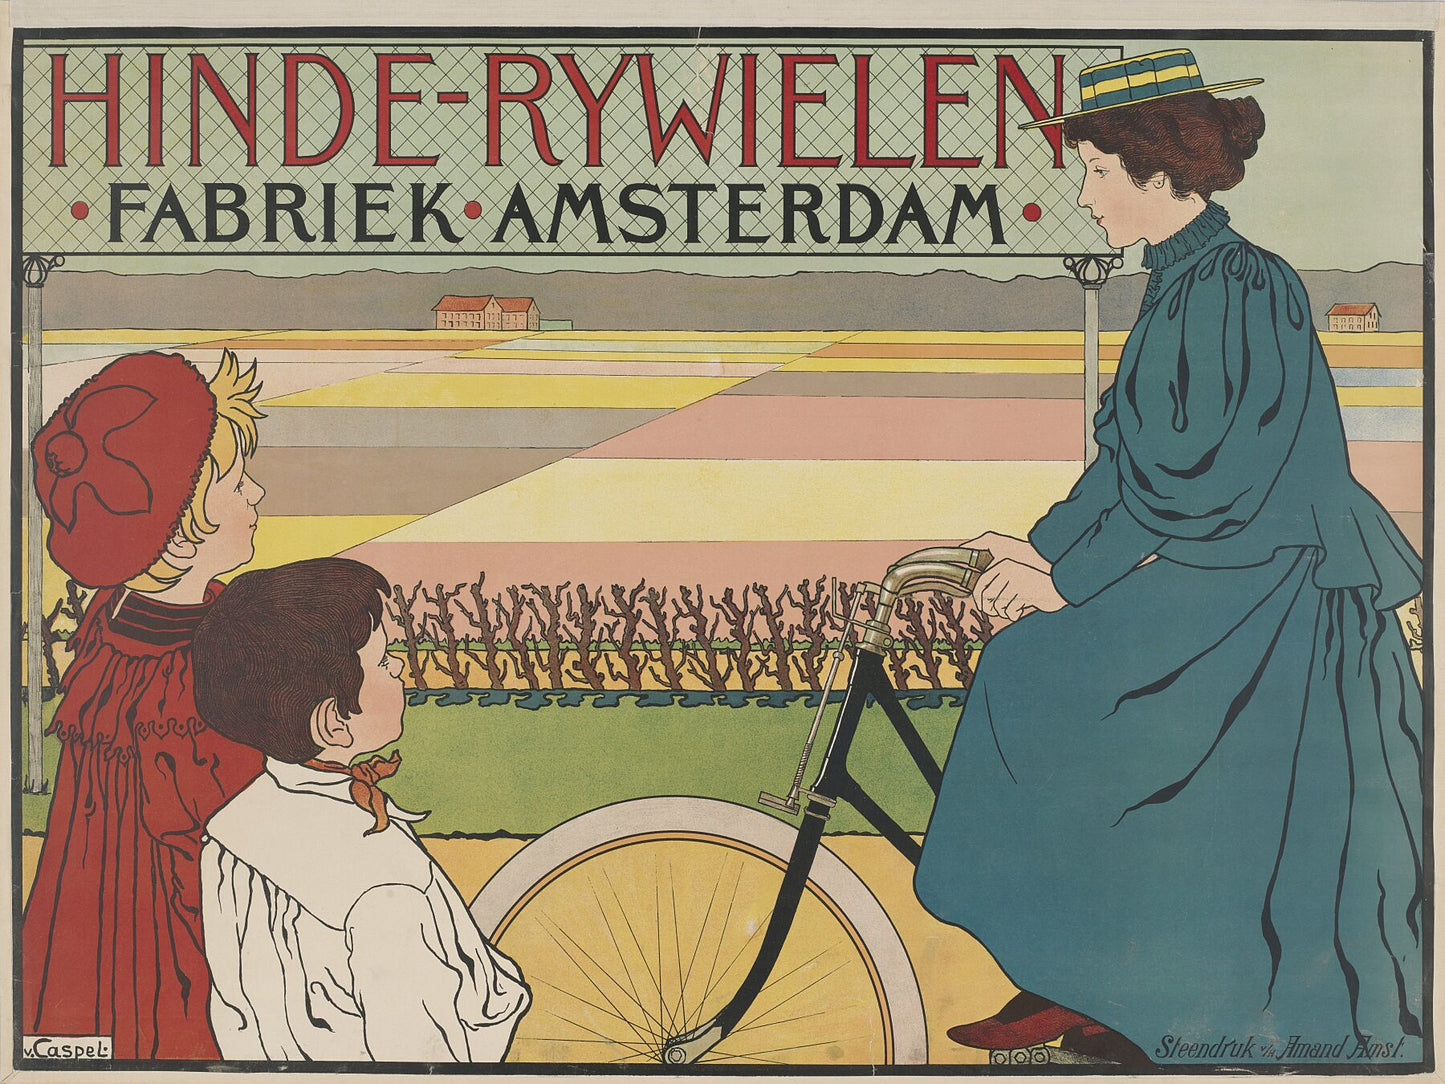 Hinde-Bicycle Factory Amsterdam, Johann Georg van Caspel, c. 1896 - c. 1898